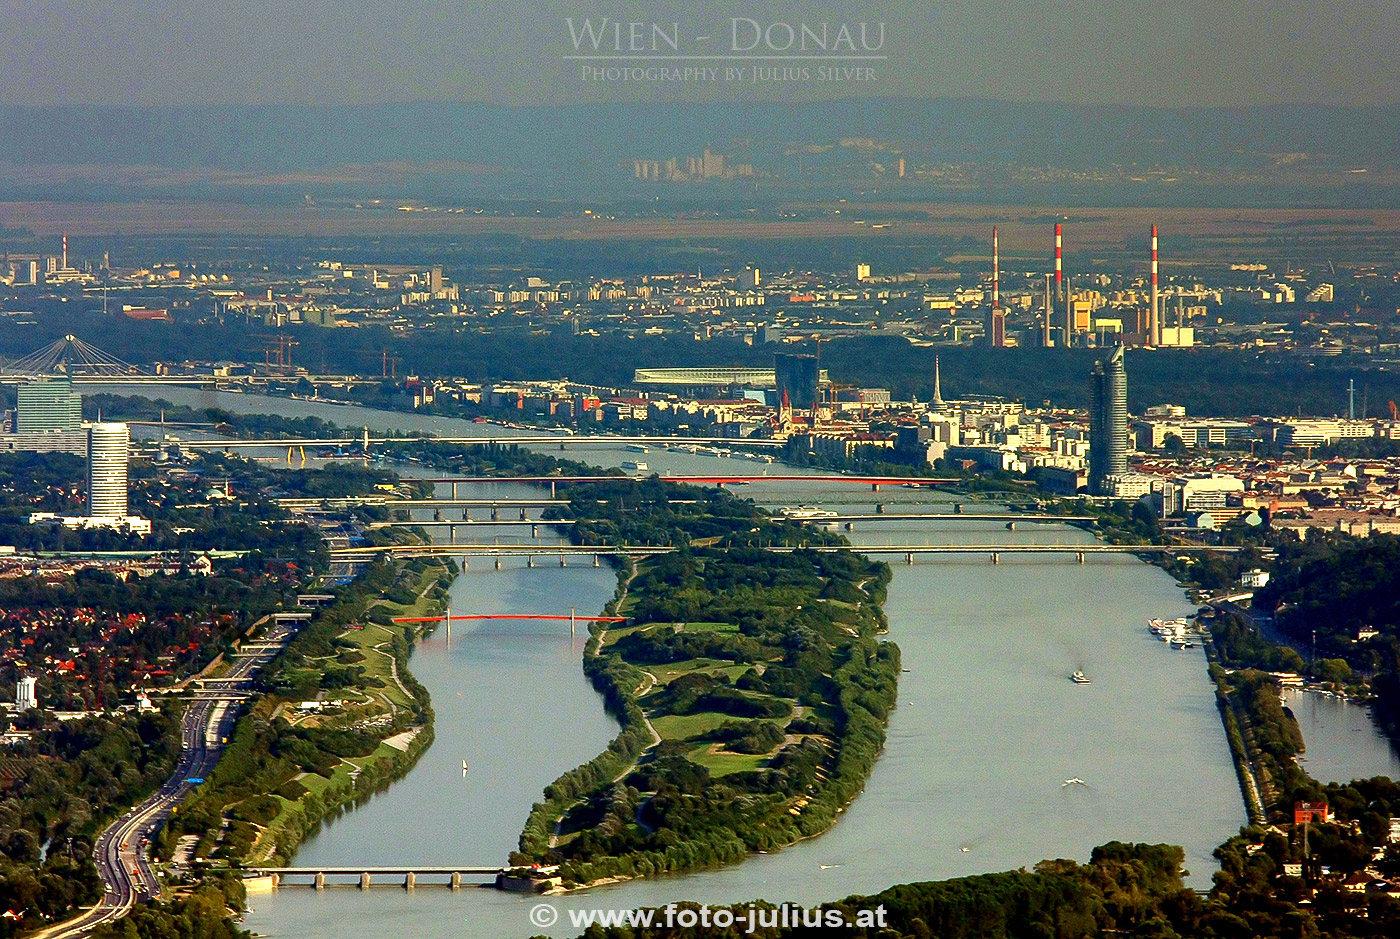 W3557a_Donau_Donauinsel_Wien.jpg, 637kB